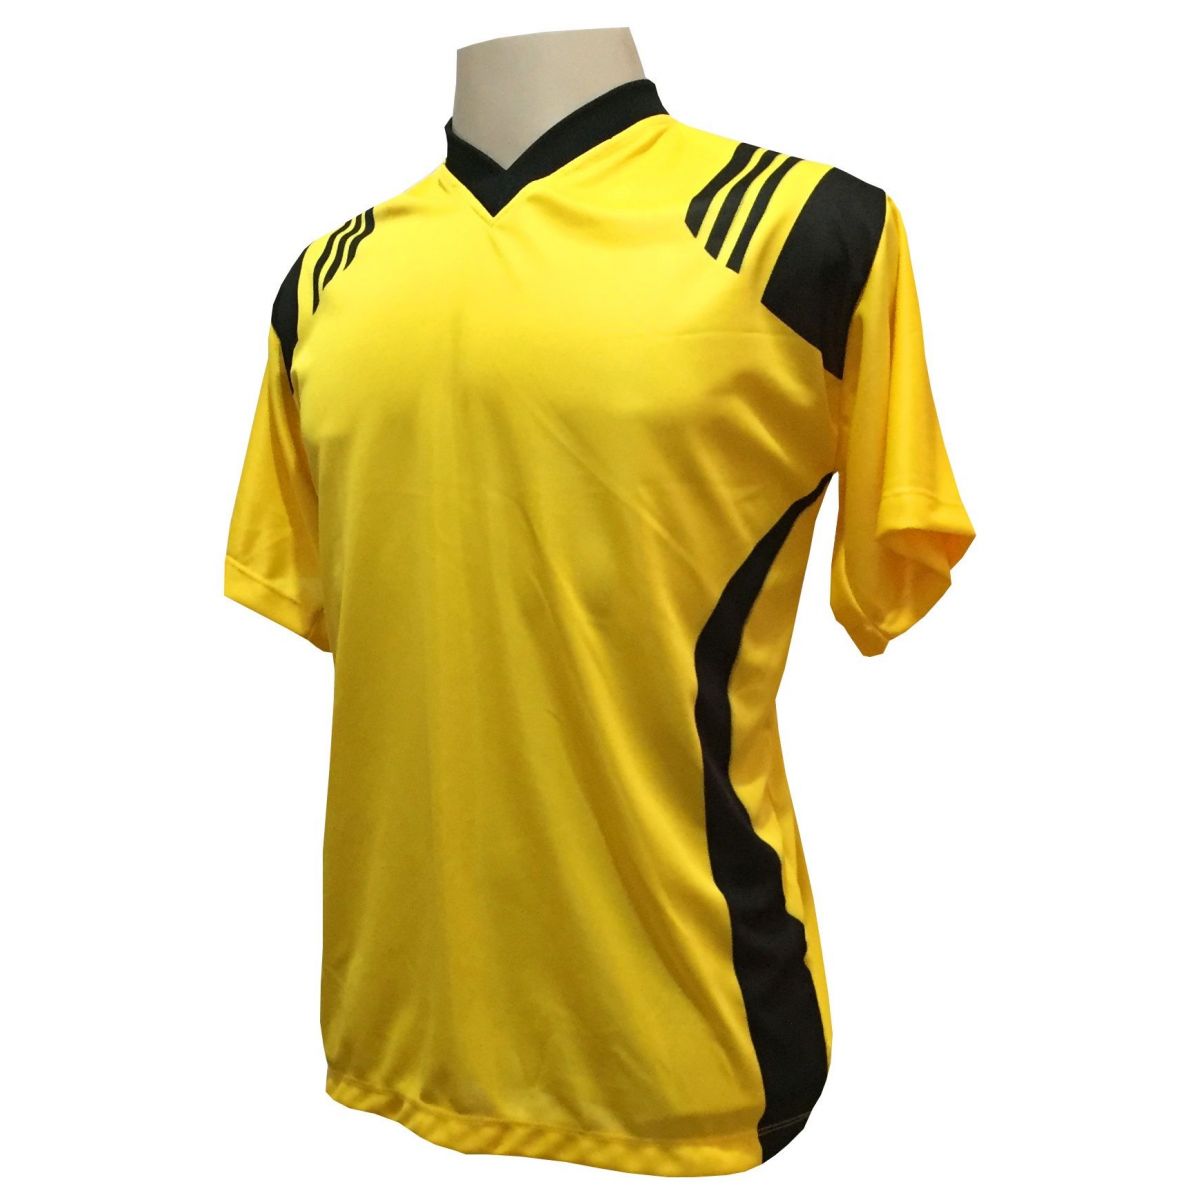 Uniforme Esportivo com 20 camisas modelo Roma Amarelo/Preto + 20 calções modelo Madrid + 1 Goleiro + Brindes